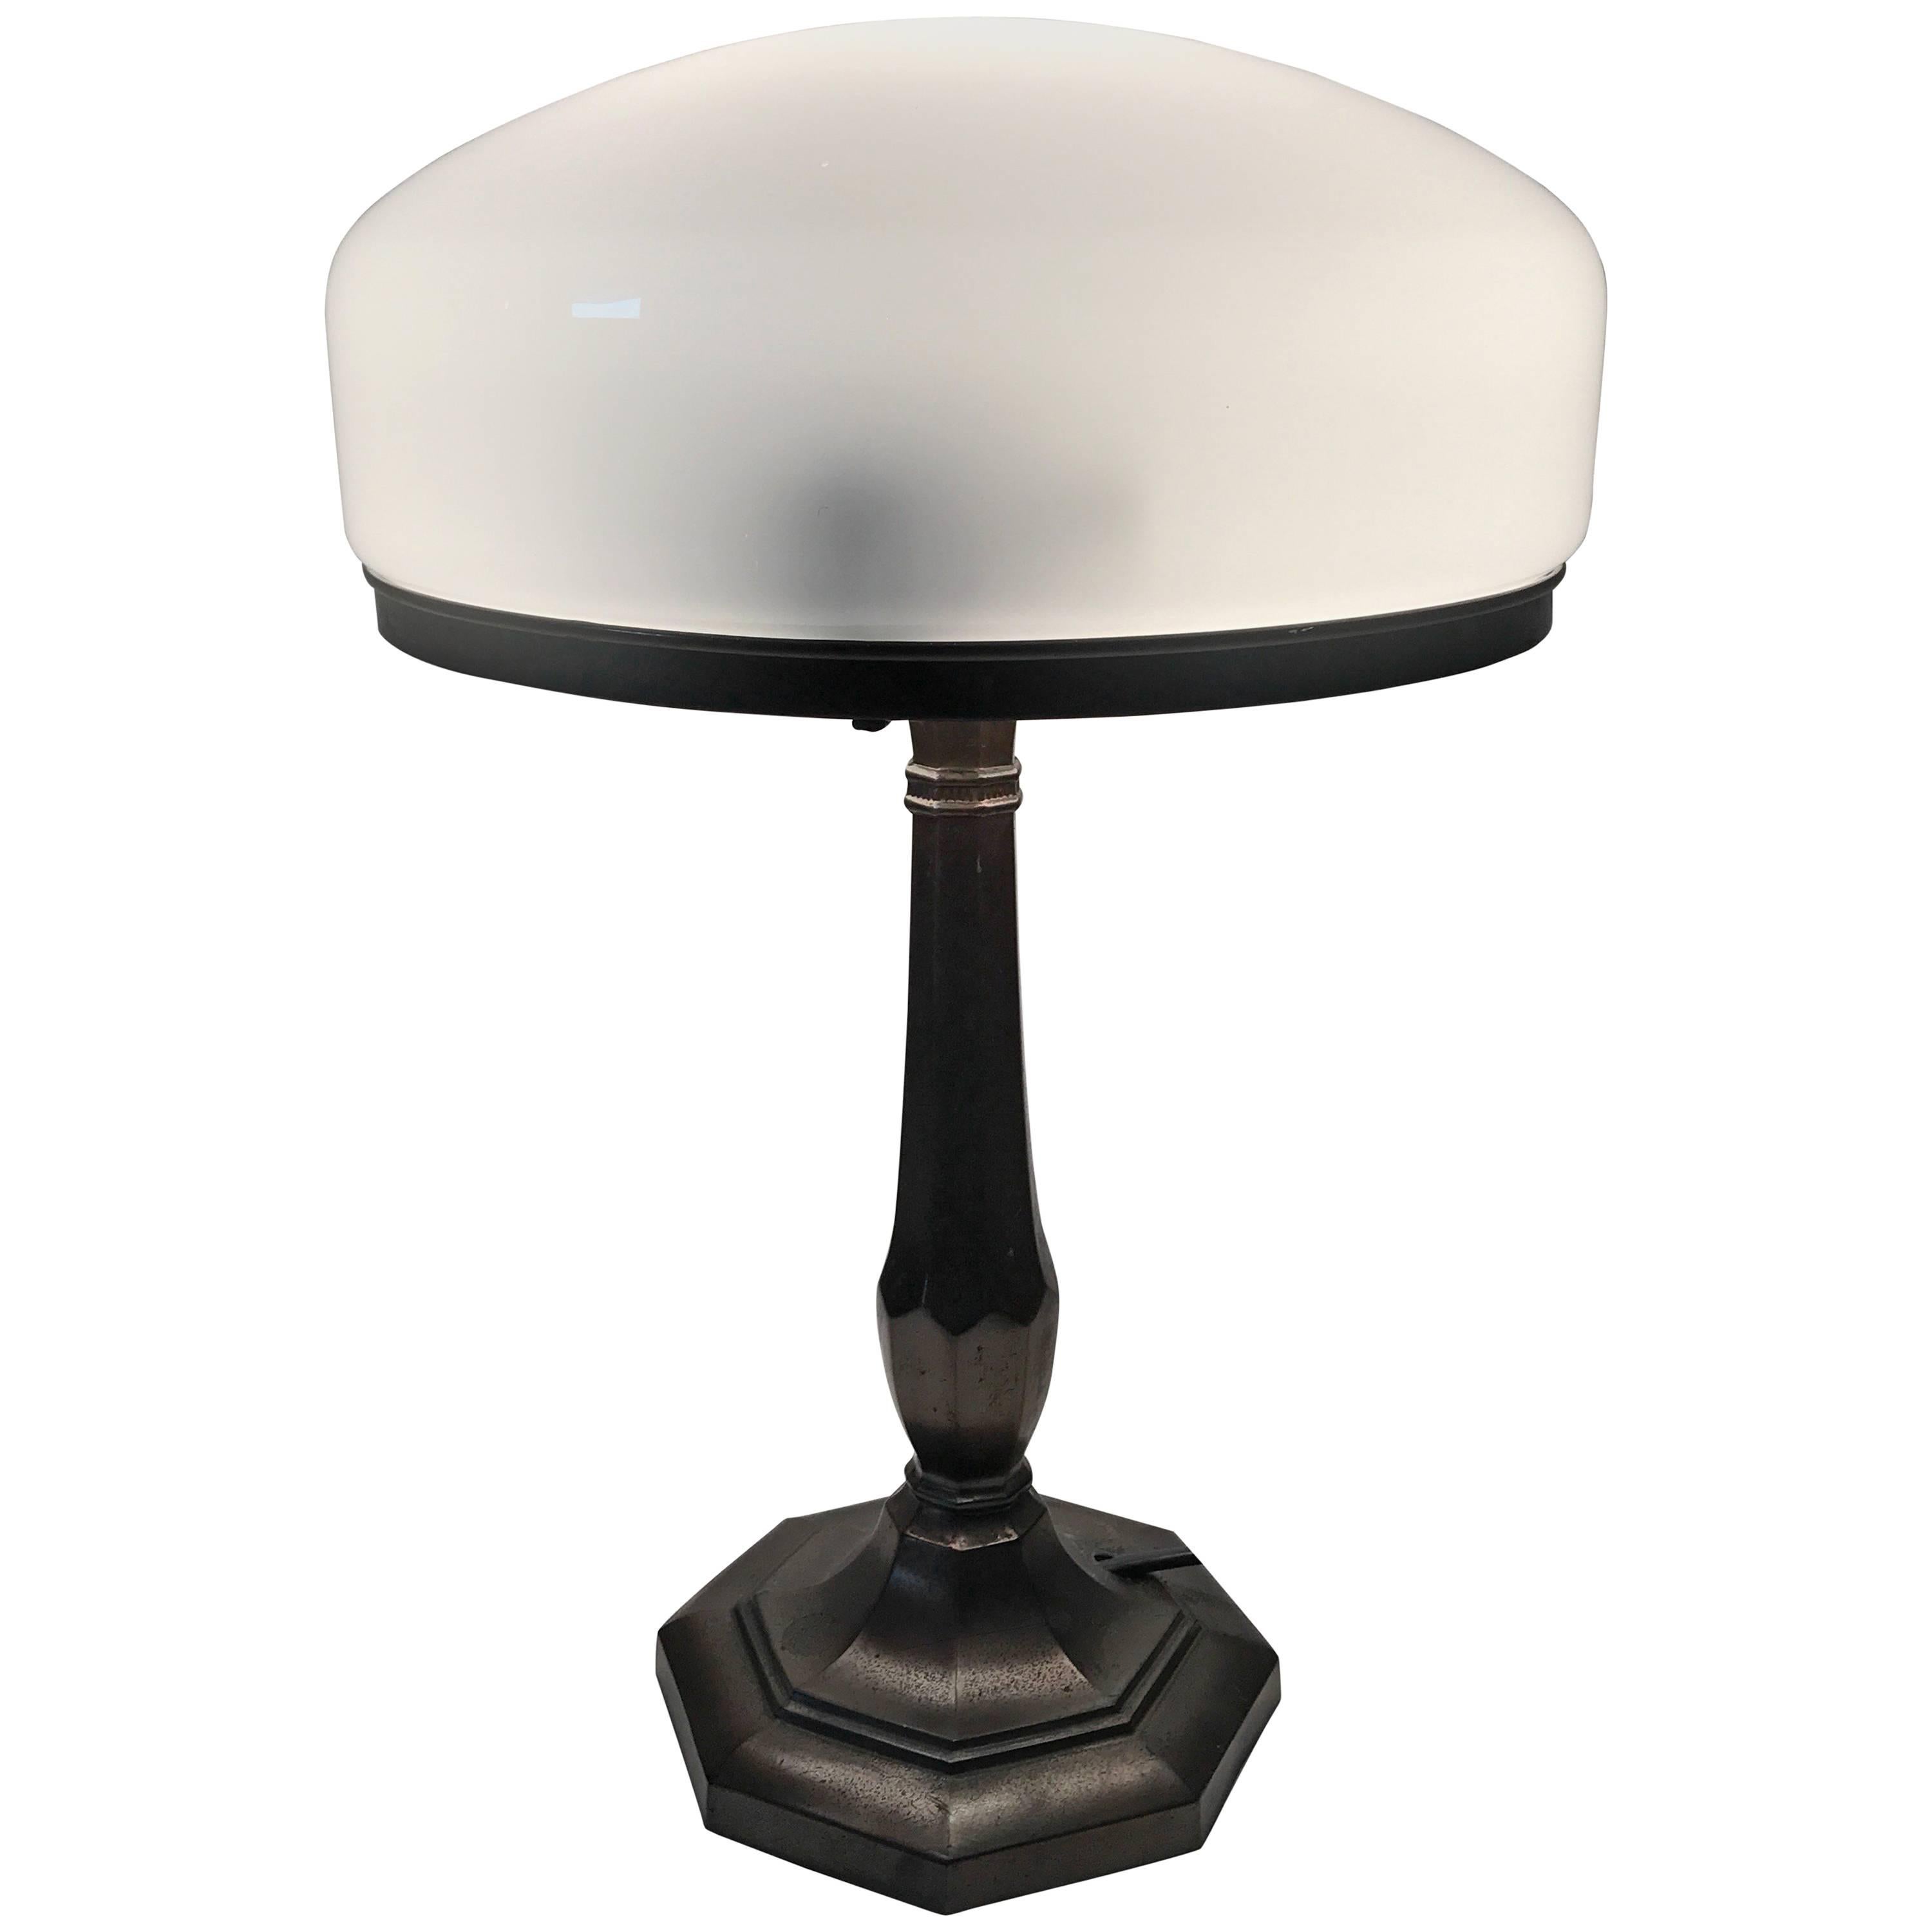 Swedish Jugendstil Art Nouveau Copper Patinated Metal Table Lamp For Sale